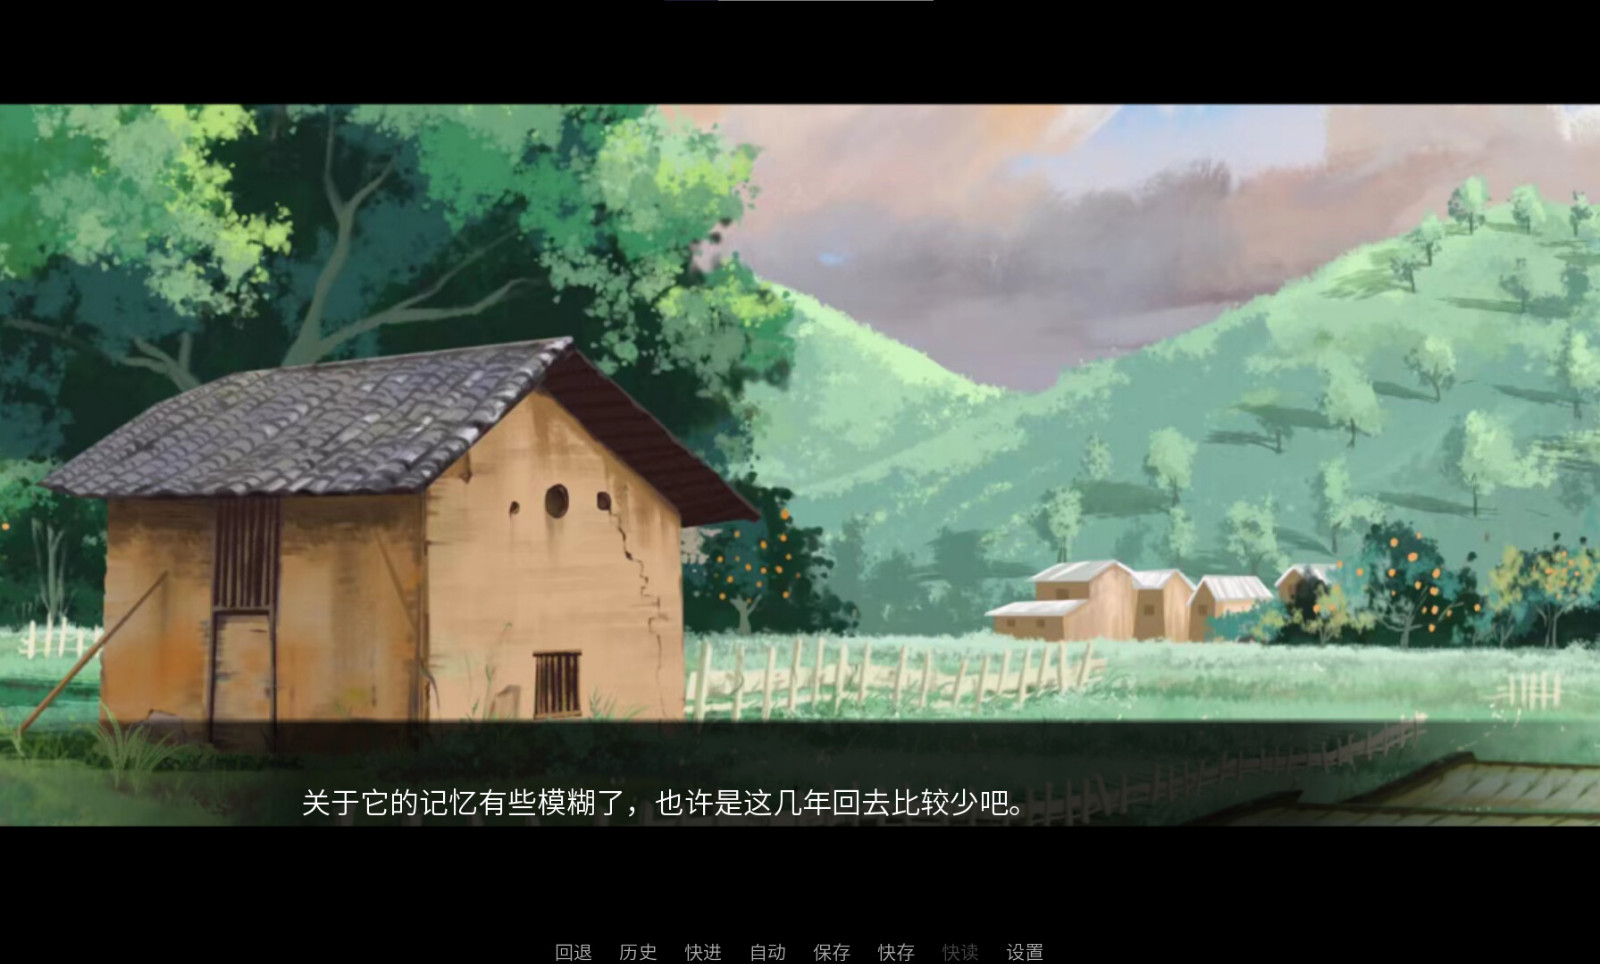 国产新写实主义视觉小说《龙栖》3月21日发售 取材于中国龙母民俗文化 二次世界 第6张